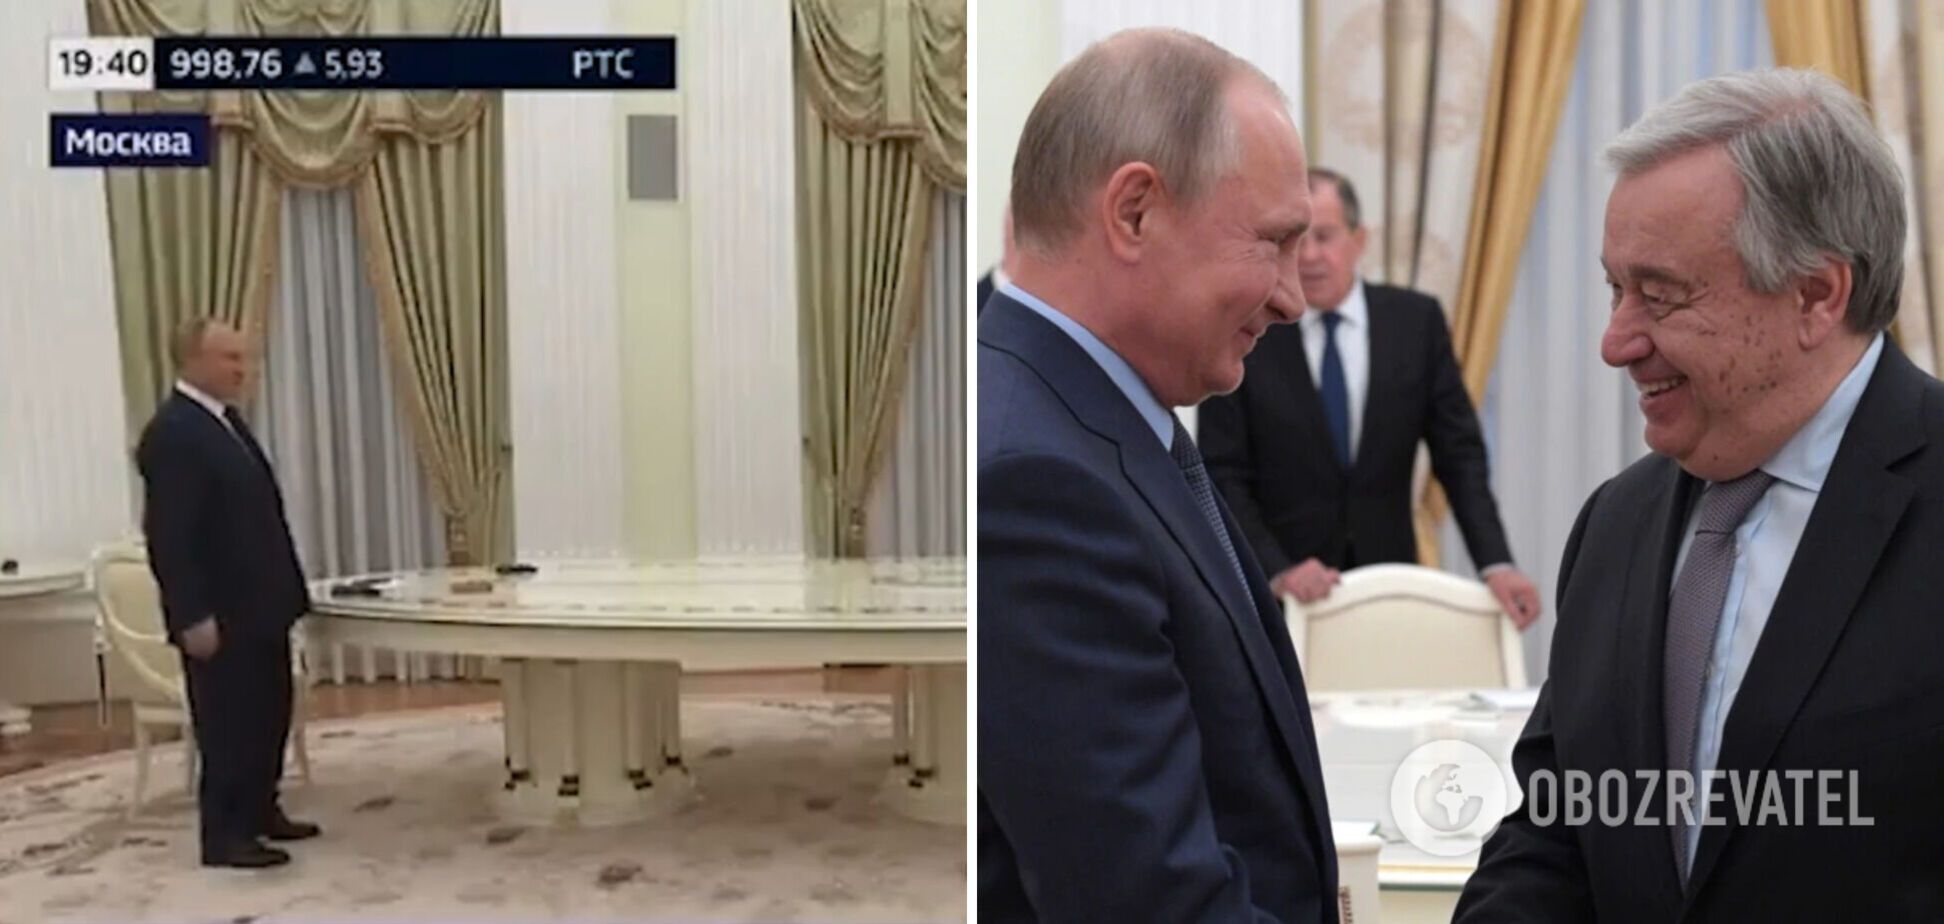 Путин на встрече с генсеком ООН хромал и отличился странным поведением. Фото и видео